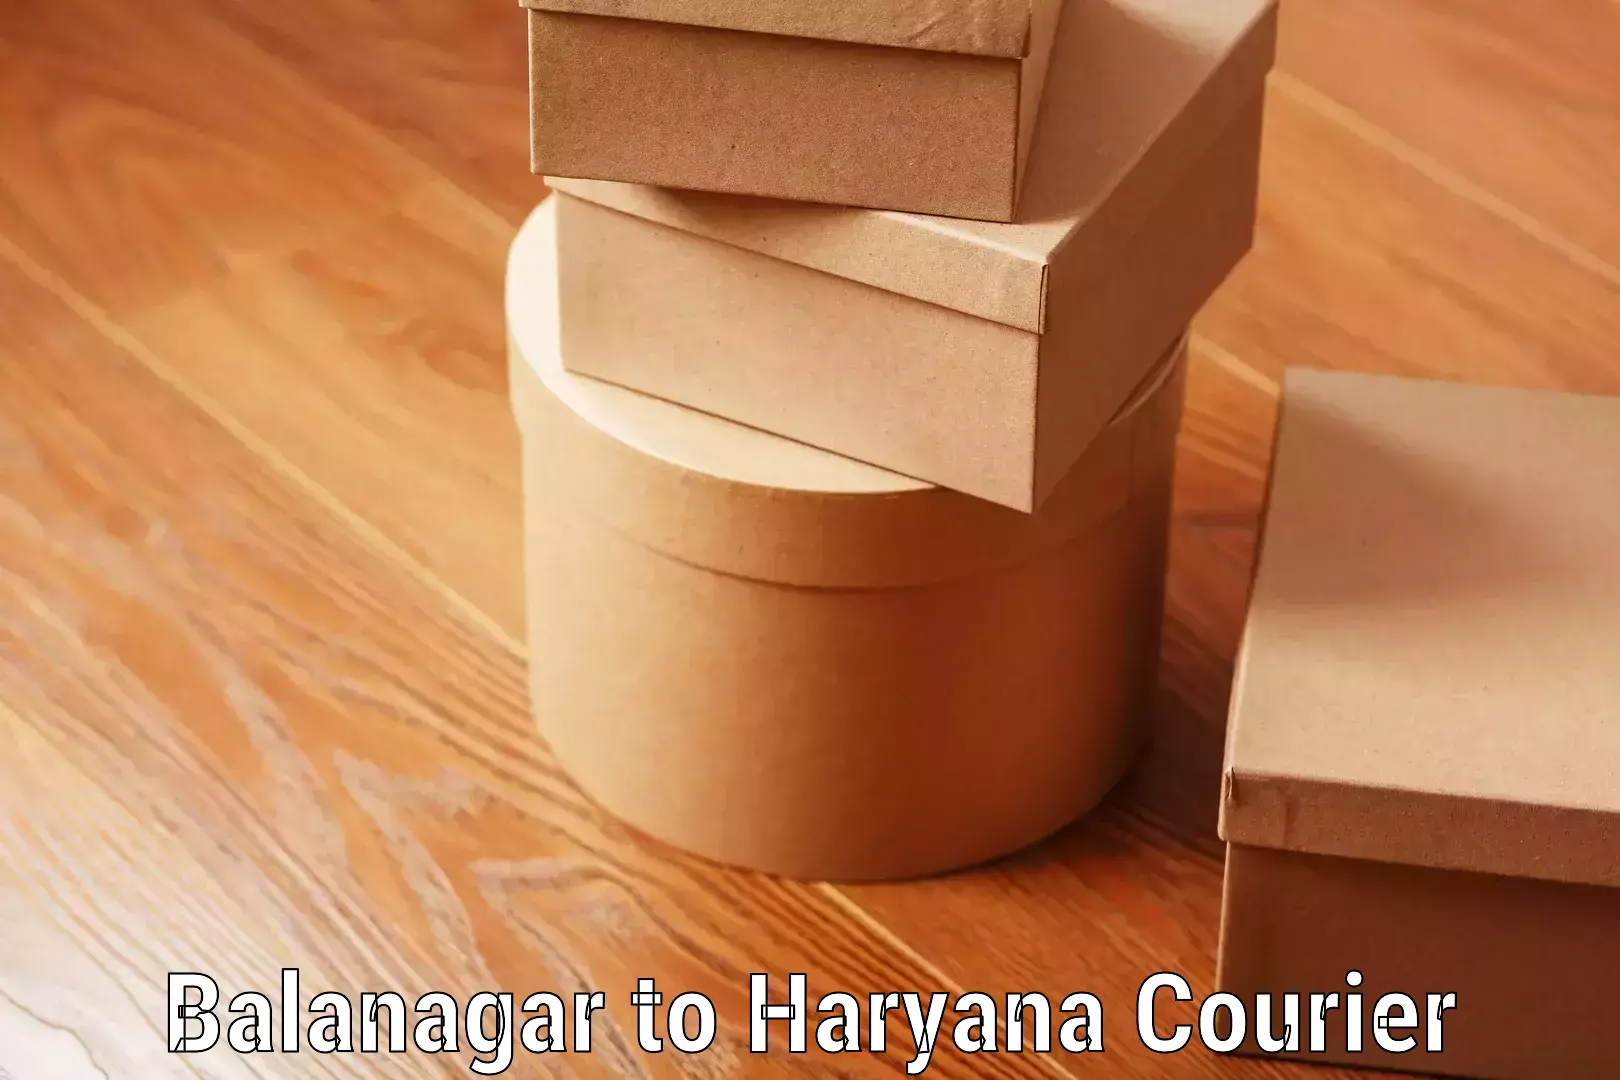 Flexible luggage courier service Balanagar to Gurugram